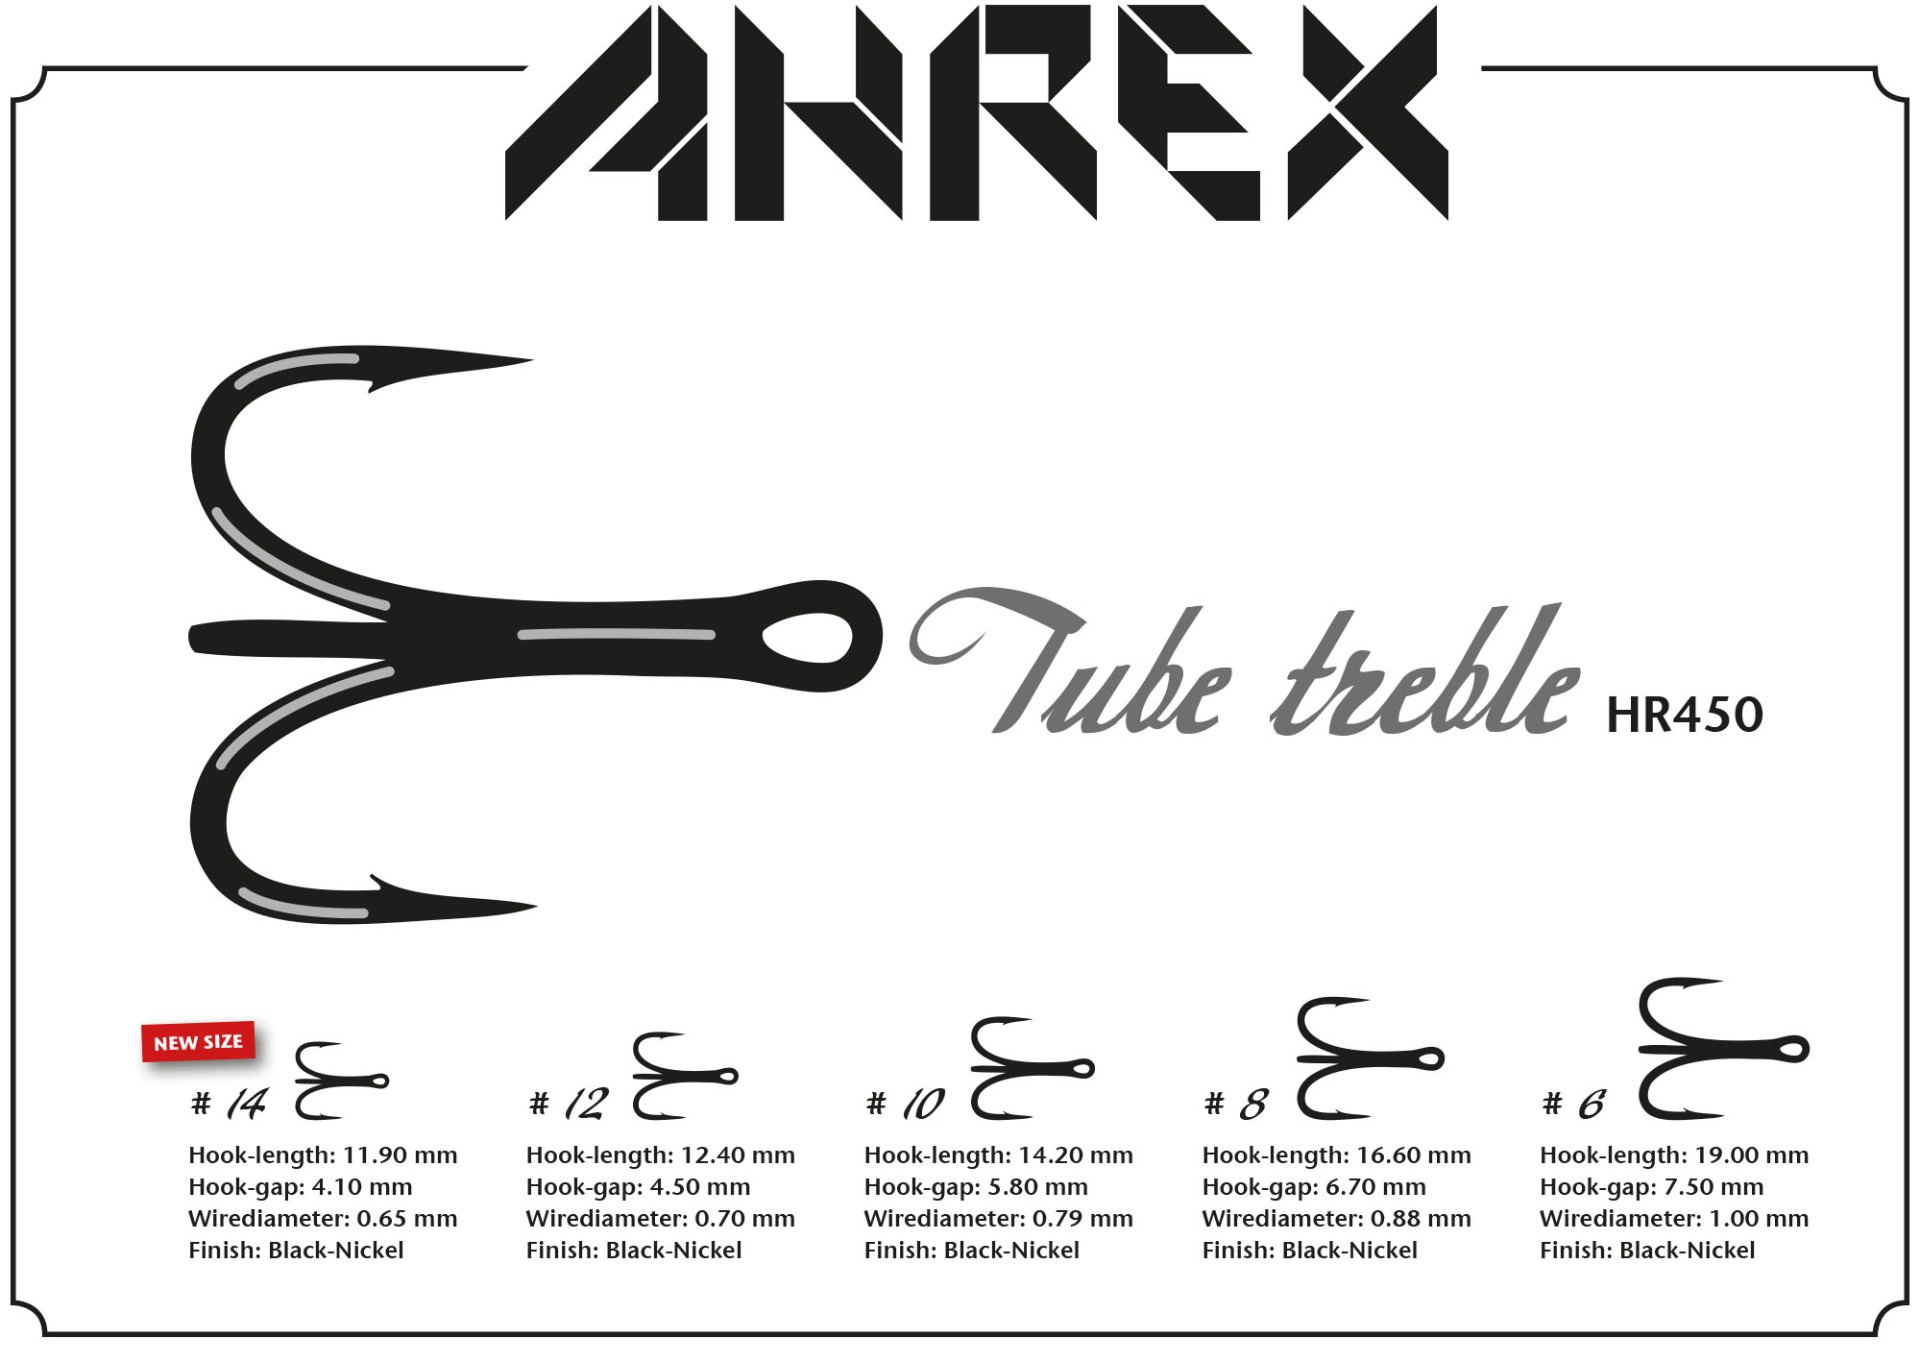 Ahrex Triple Tube #6